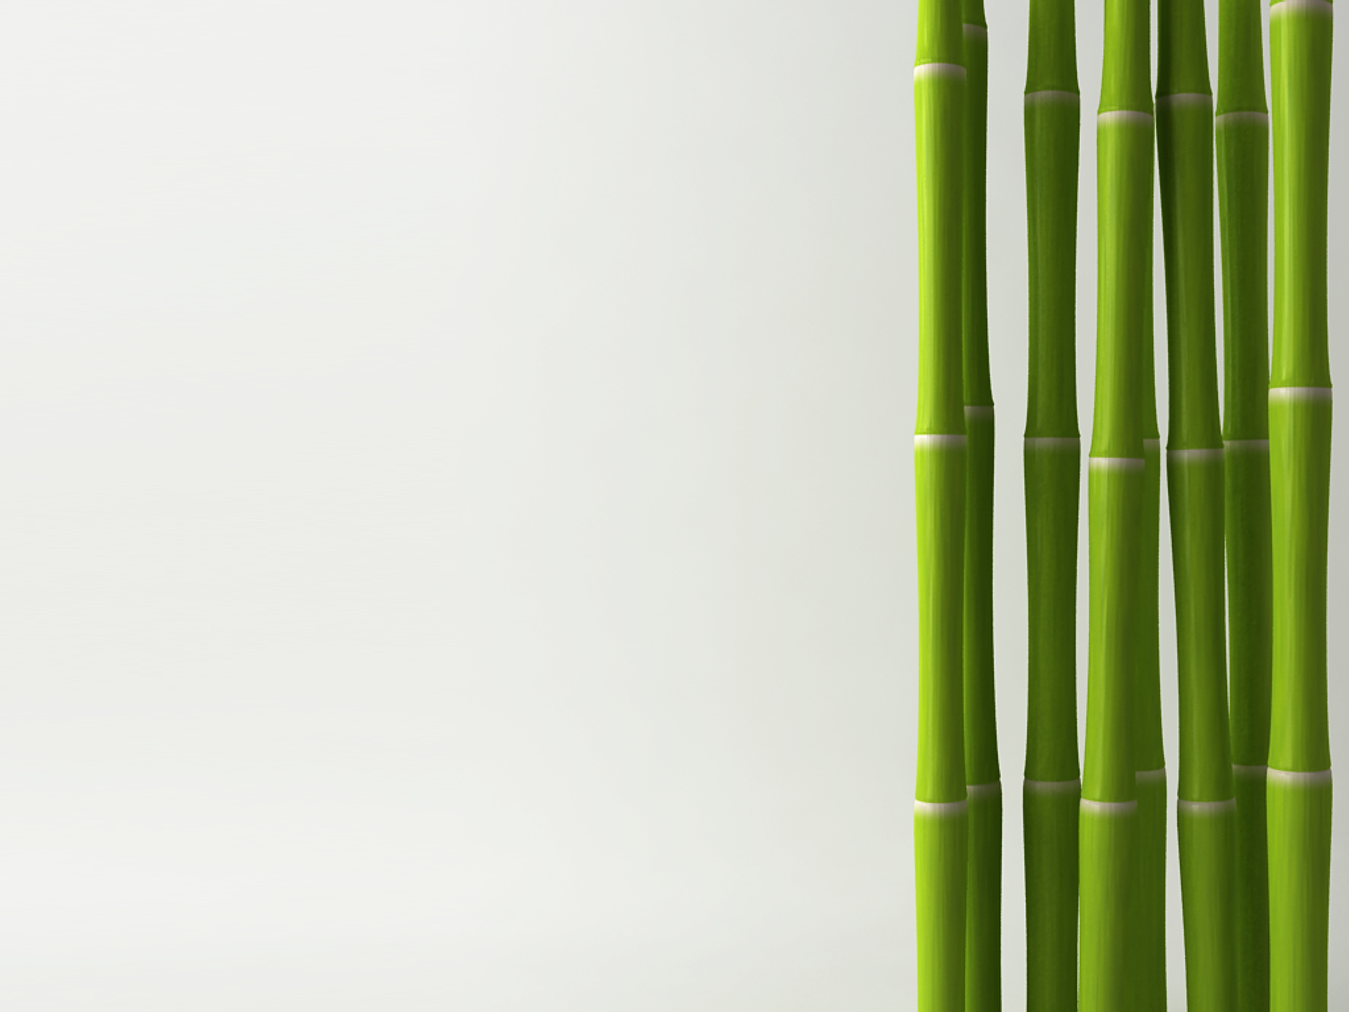 Биг бамбук big bamboo vip. Бамбук Широшима. Бамбук по7бм024. Бамбук на белом фоне. Бамбуковые стебли.